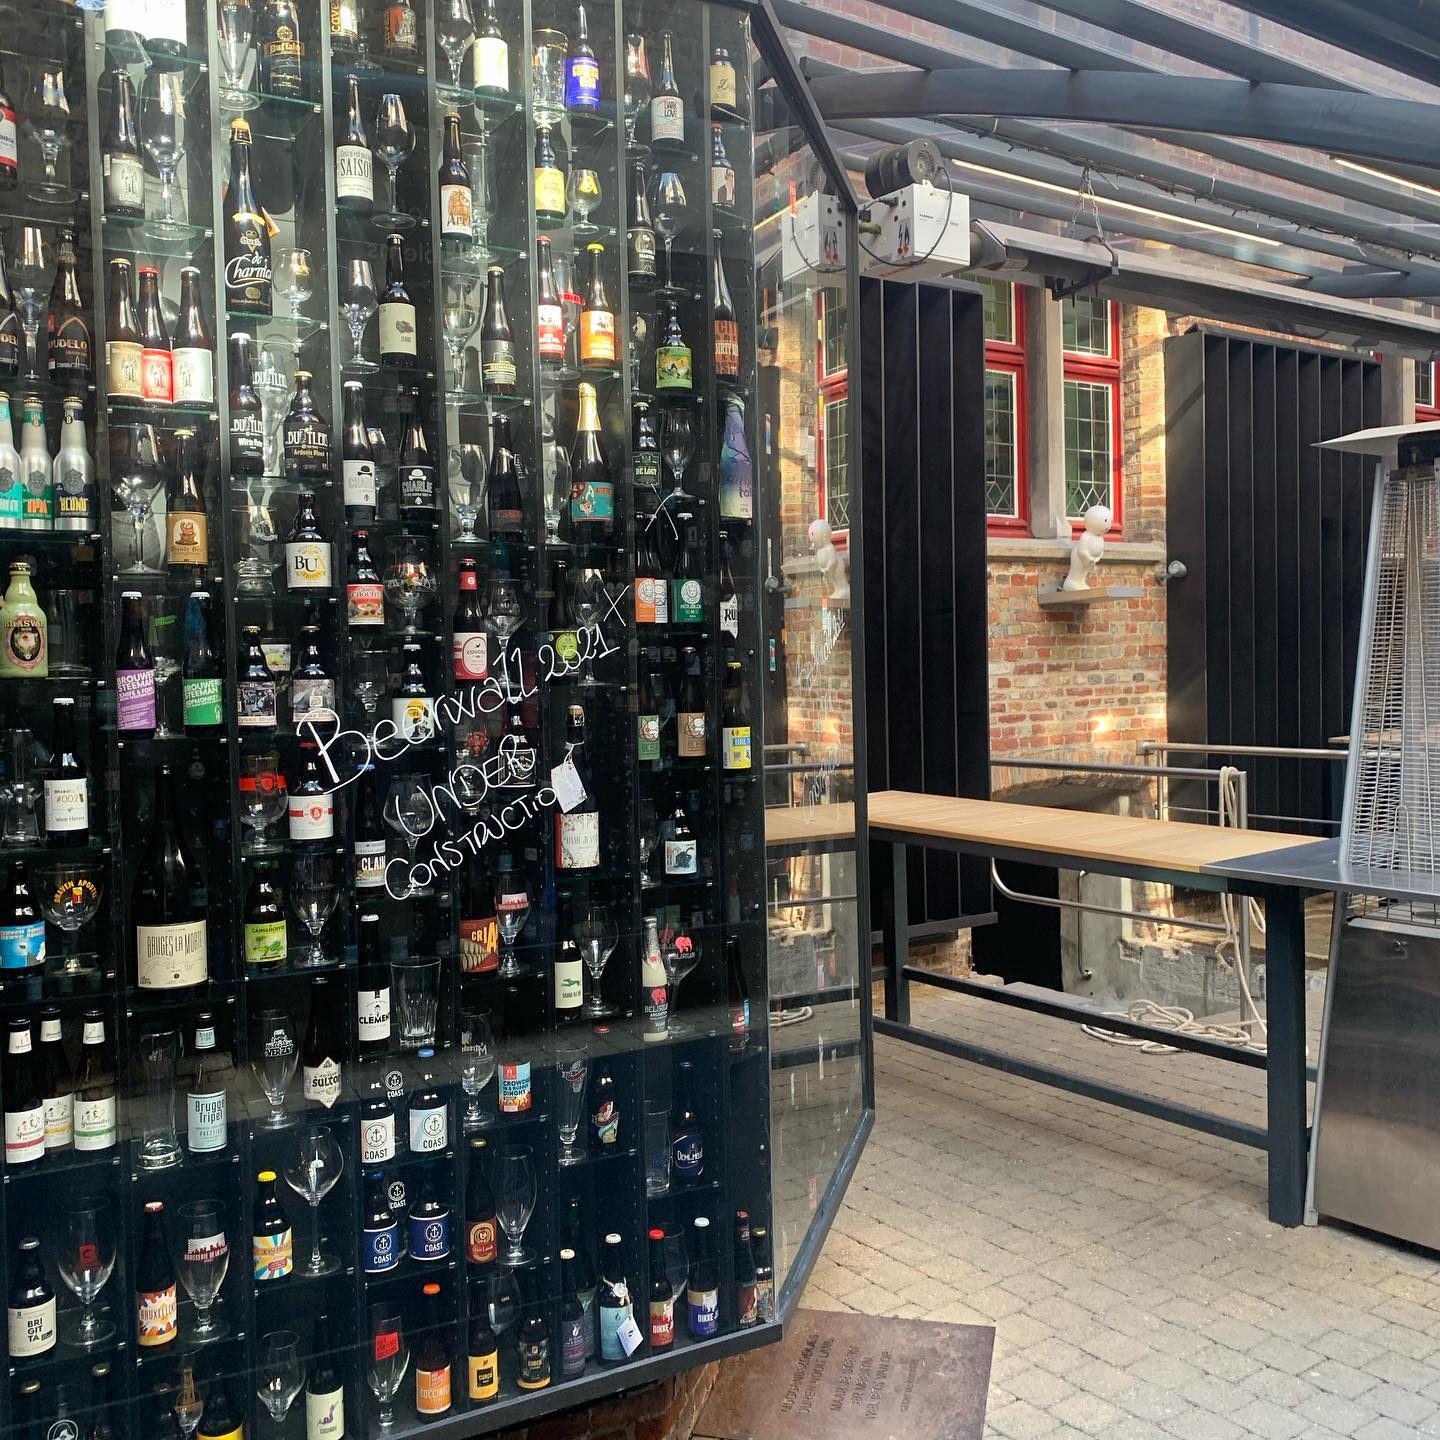 2be Beer Wall - Endroit insolite à Bruges, en Belgique